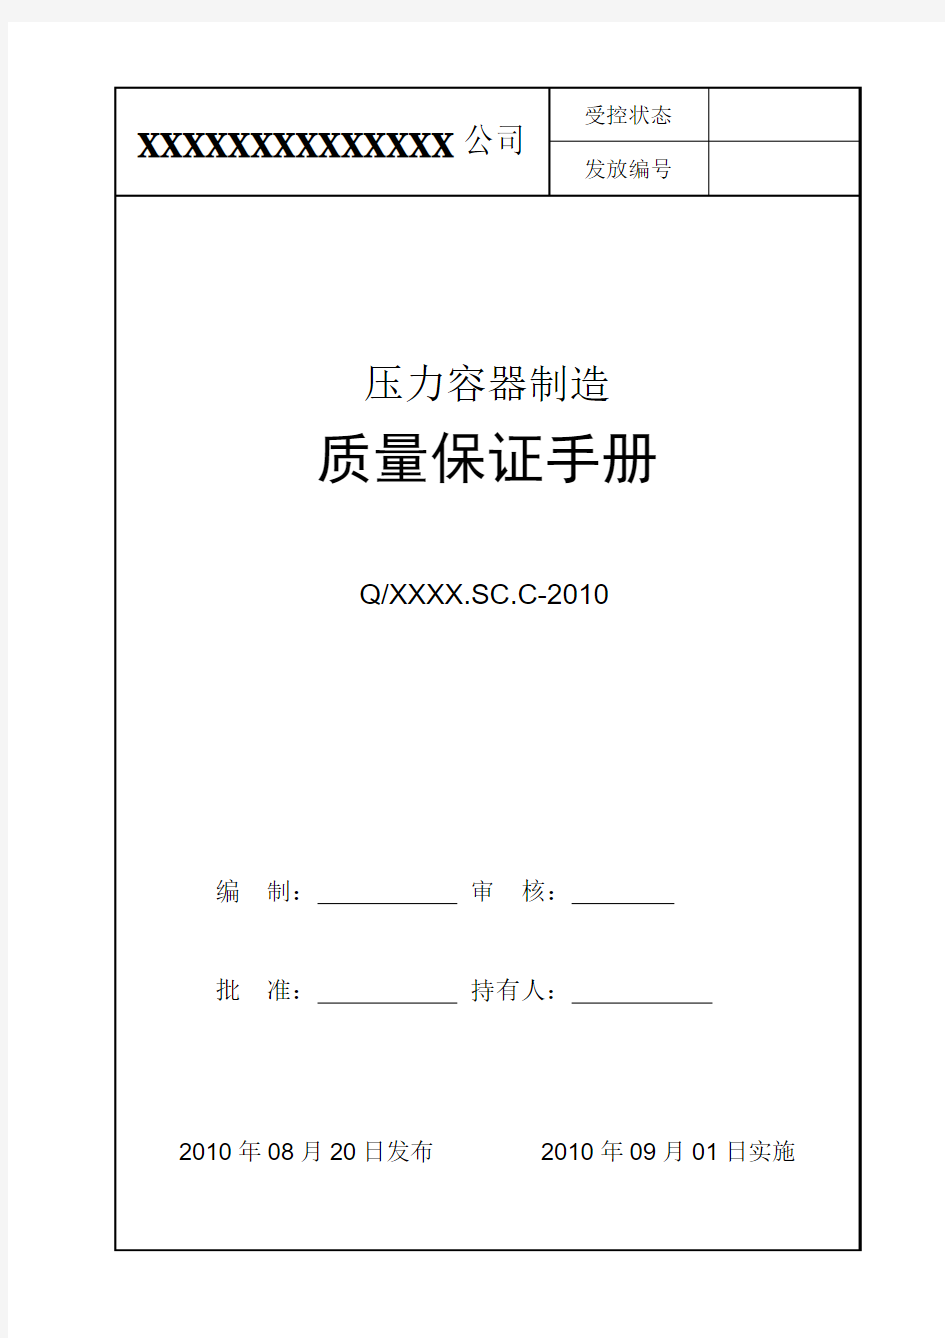 压力容器制造质量保证手册-2010版